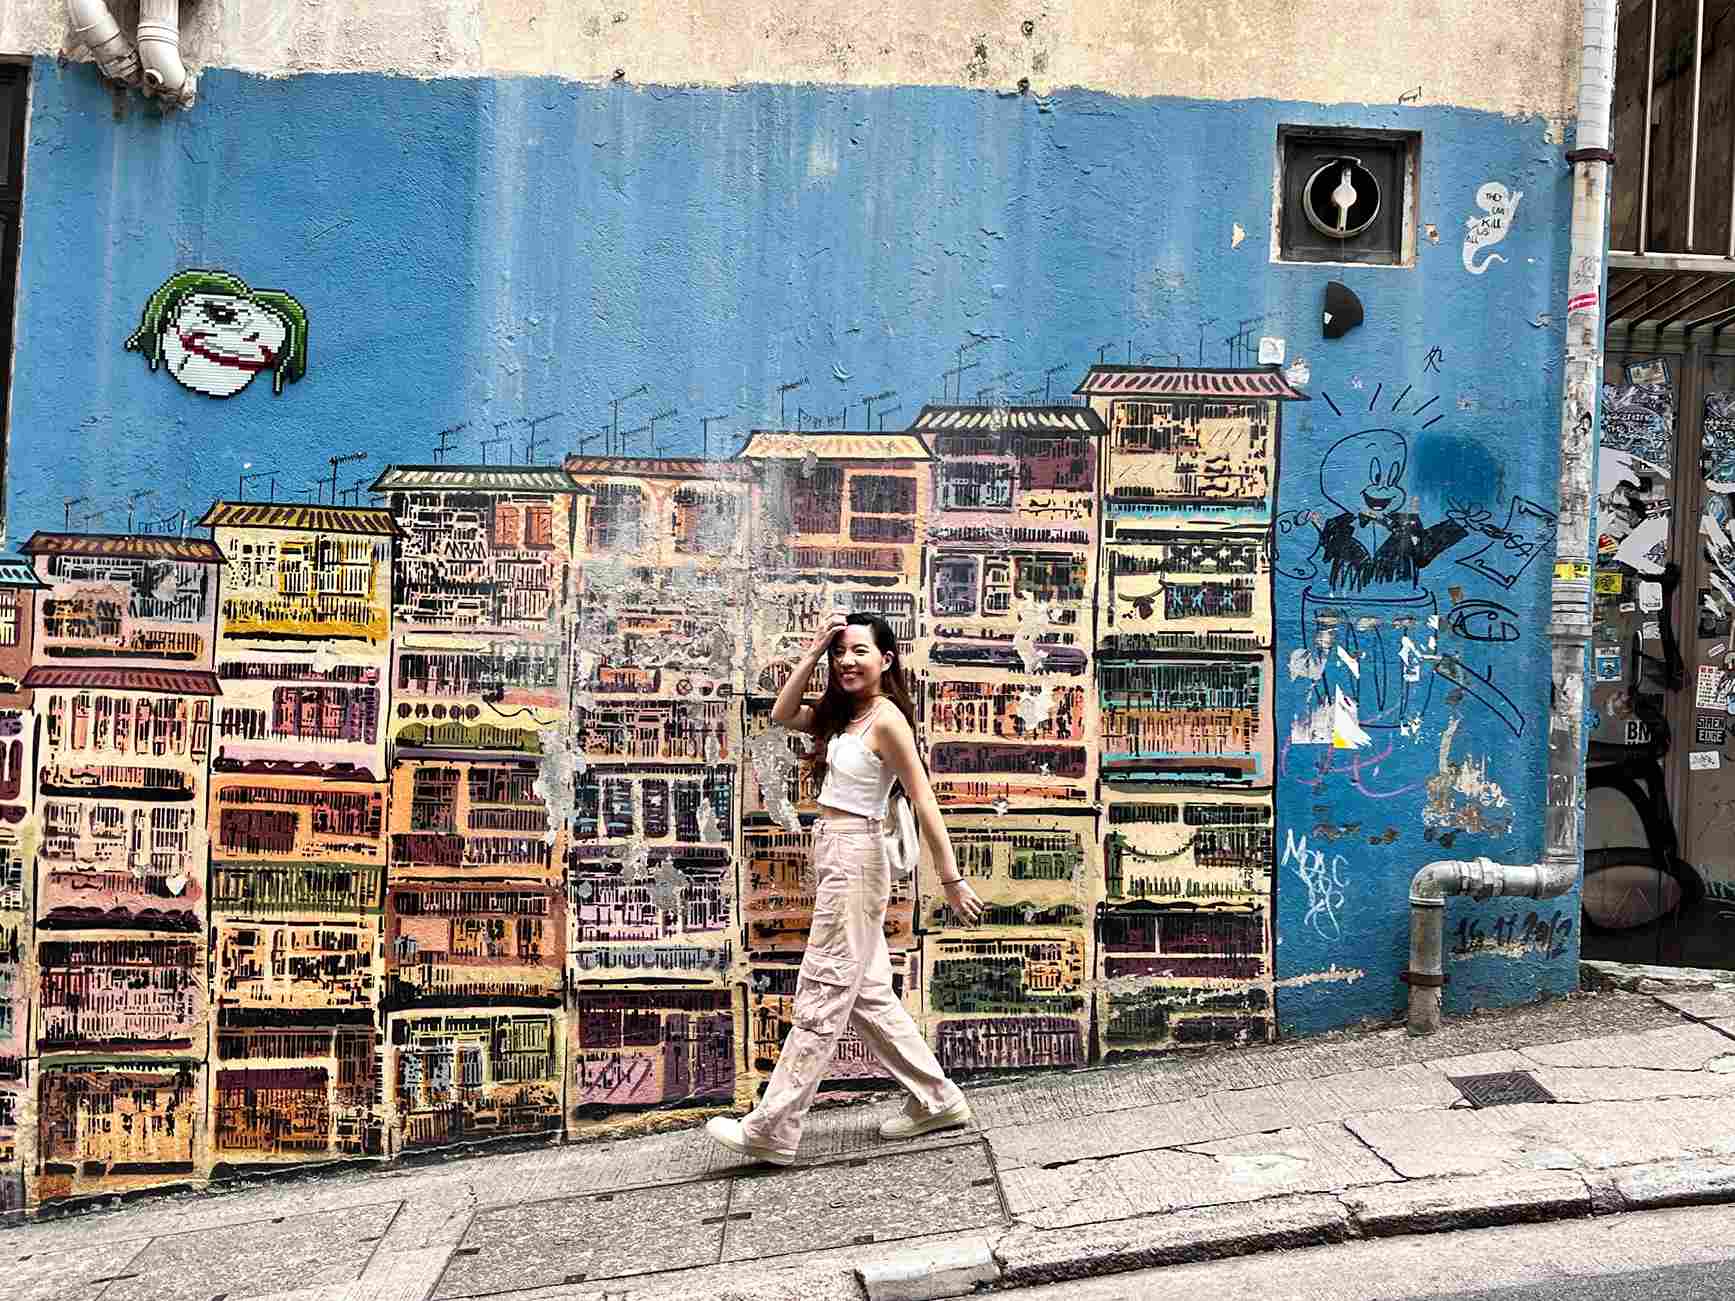 香港自由行 香港三天兩夜 香港景點 中環嘉咸街壁畫